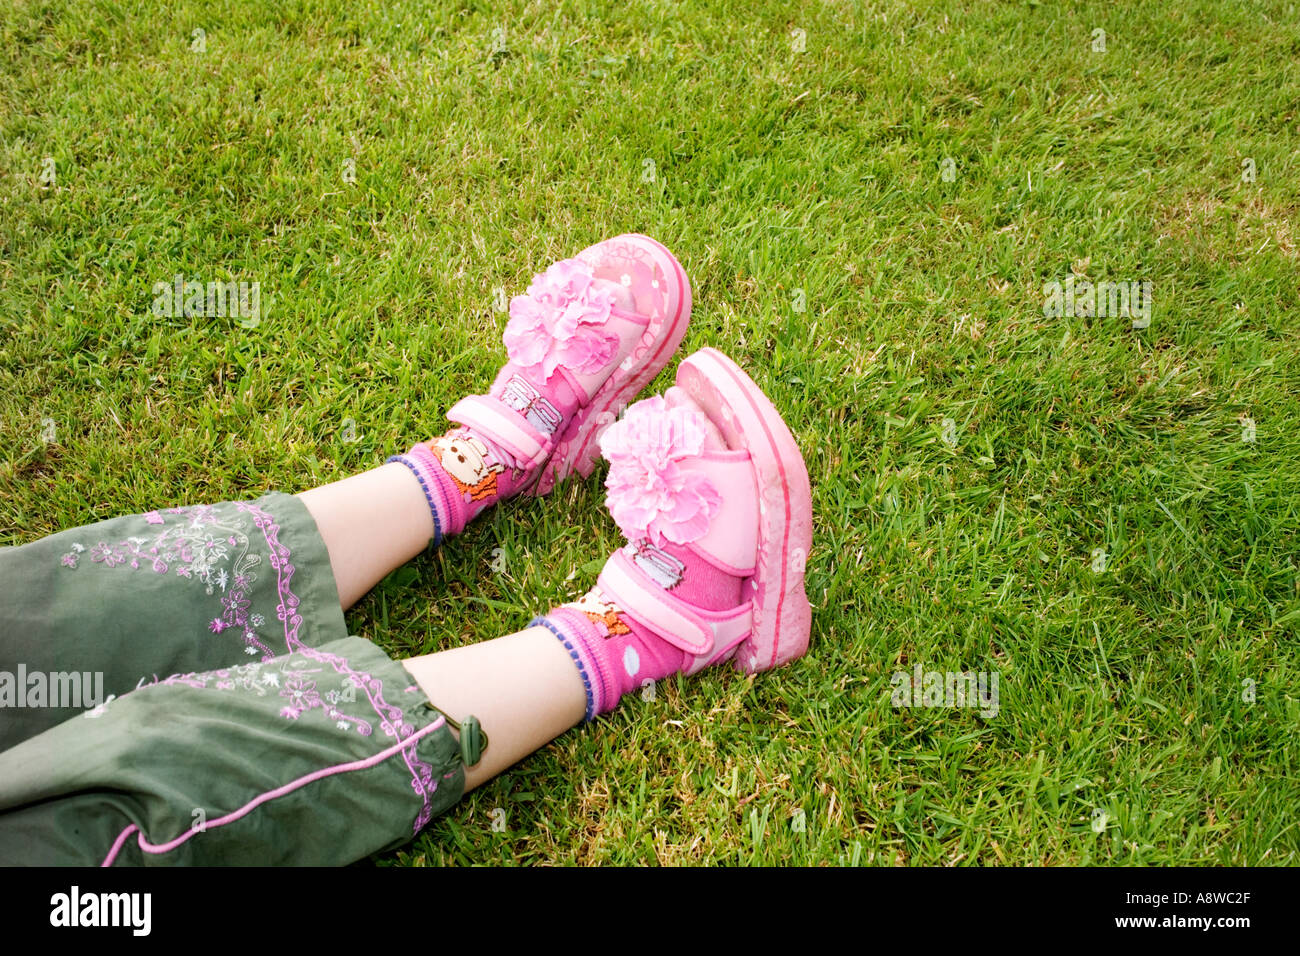 Le giovani ragazze piede sull'erba fotografato in maniera contemporanea Foto Stock